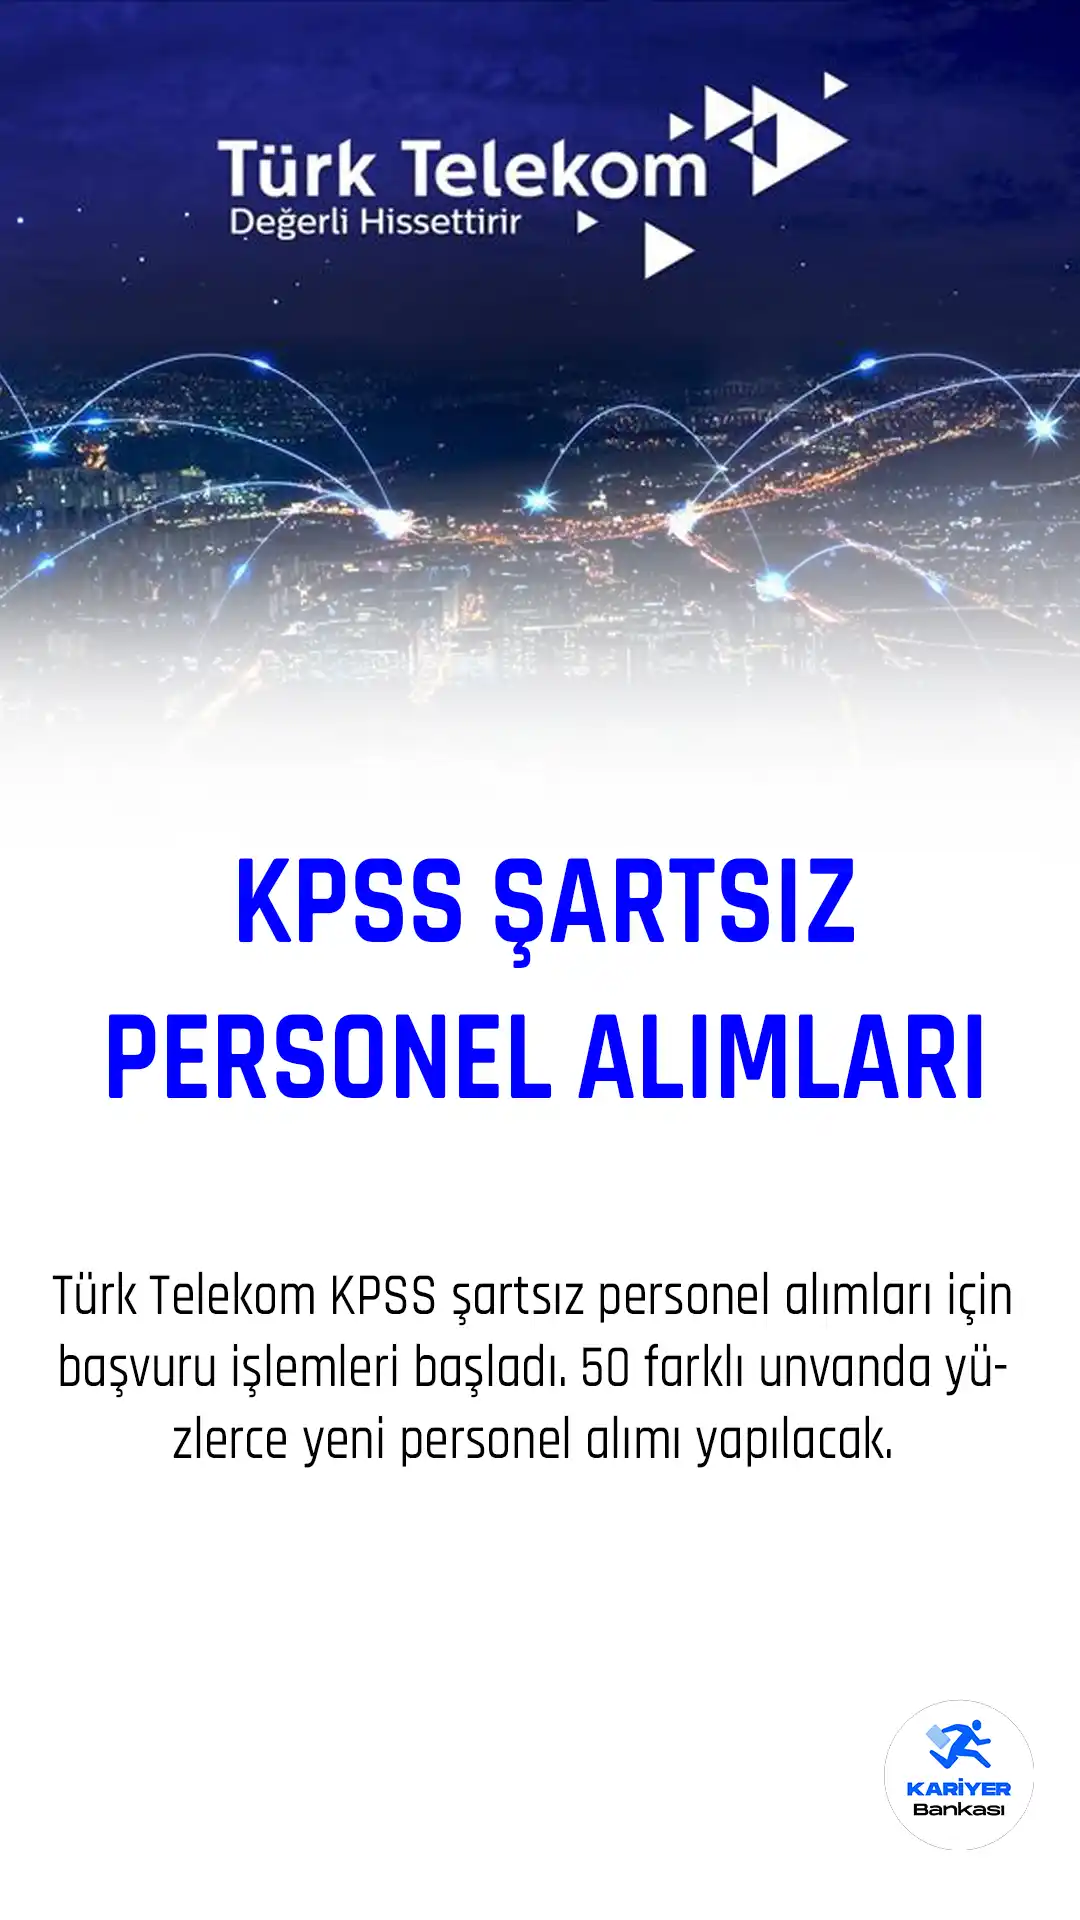 Türk Telekom KPSS şartsız yeni personel alımları için başvurular alınacak.